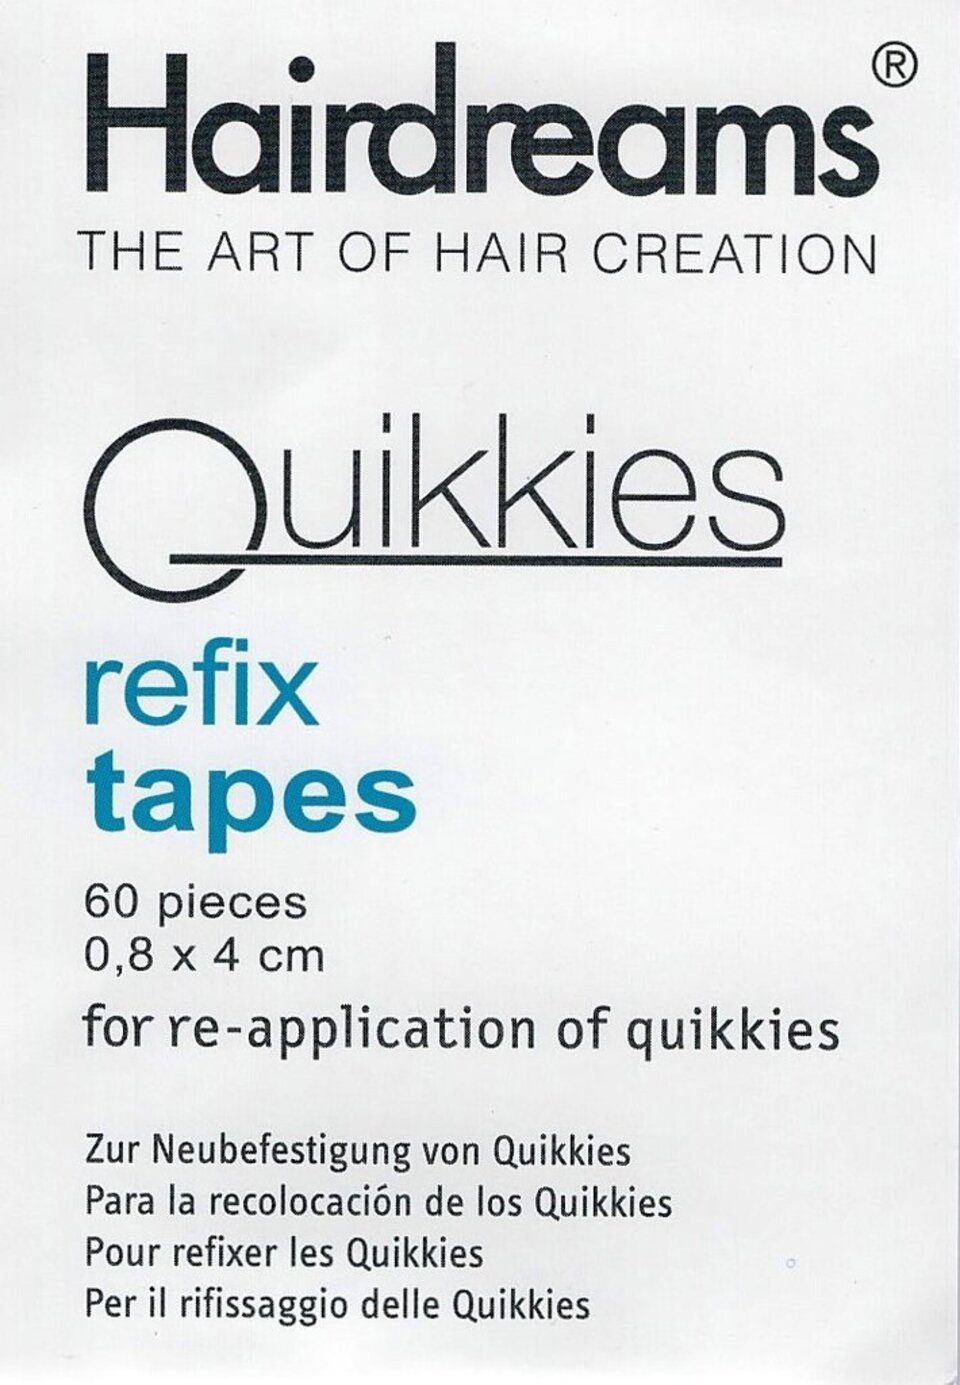 Hairdreams Echthaar-Extension Quikkies refix tapes 1 Packet mit 60 Stück